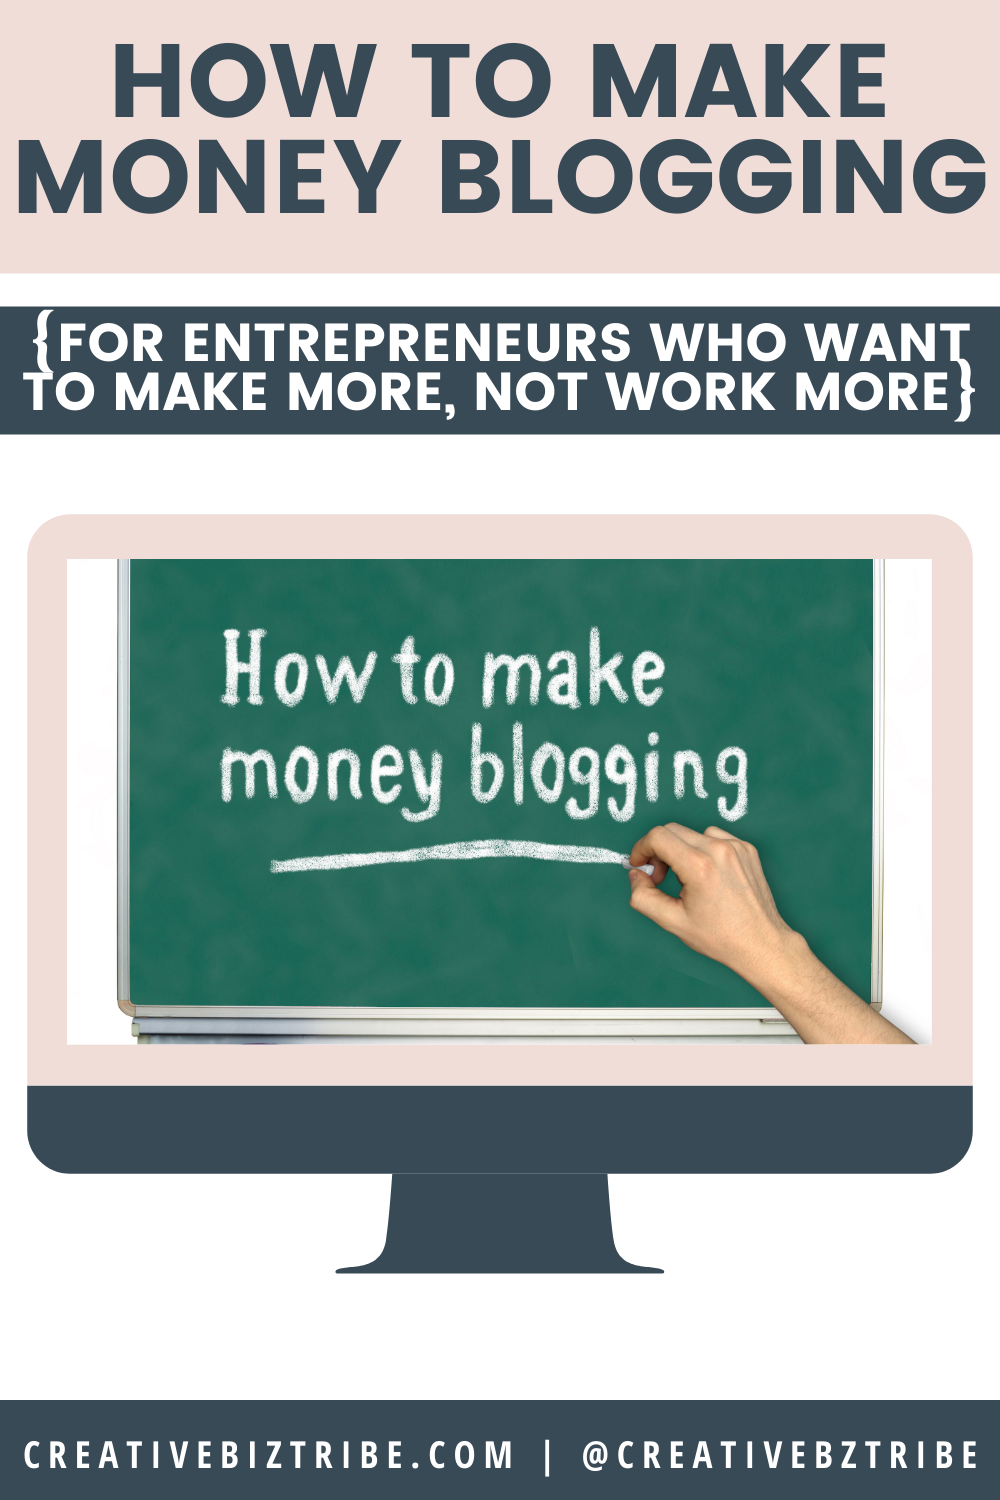 How to Make Money Blogging agutsygirl.com #blog #blogging #onlinebusiness